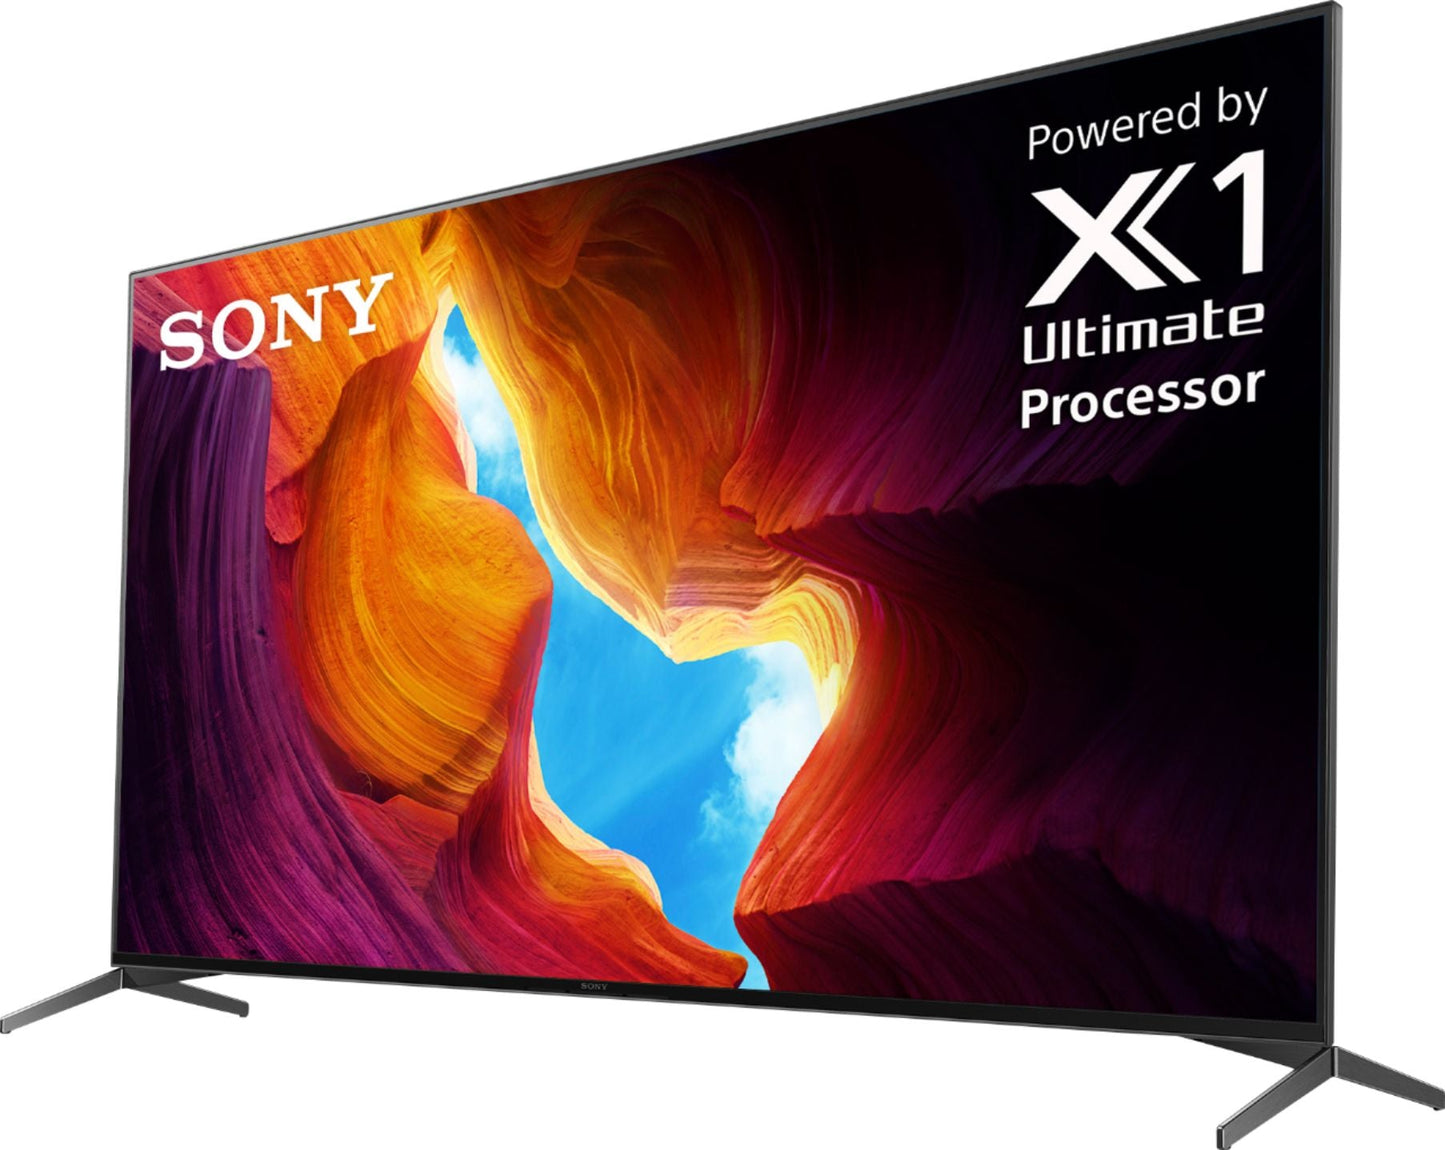 Sony X950H 65" Class HDR 4K UHD Smart LED TV XBR65X950H